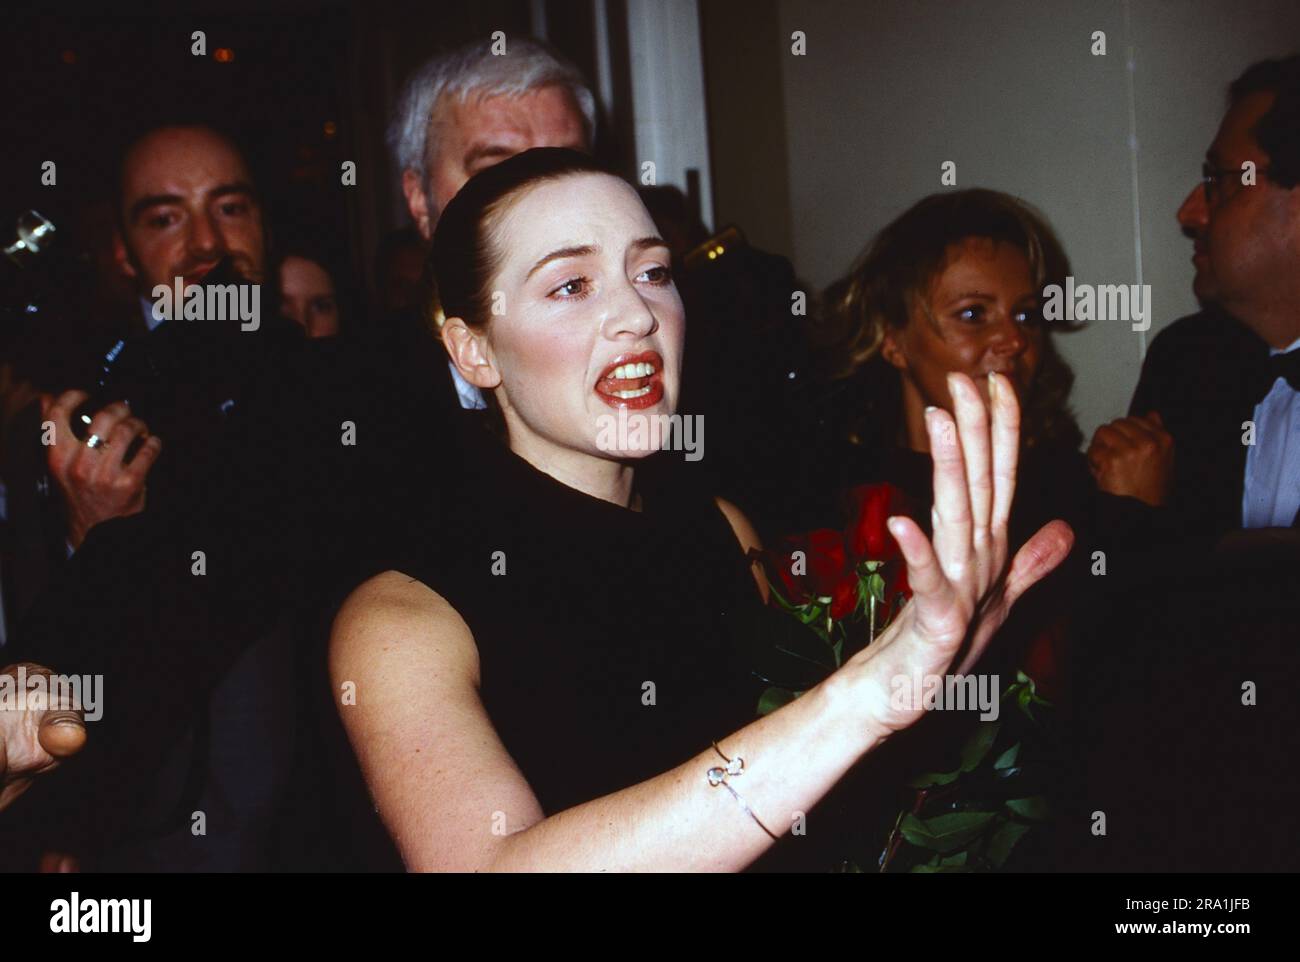 Goldene Kamera, Preisverleihung à Berlin, 2001, Kate Winslet, britische Schauspielerin, Erhielt die Goldene Kamera für ihre Rolle im film: Titanic, hier umringt von Fotografen BEI der Preisverleihung. Banque D'Images